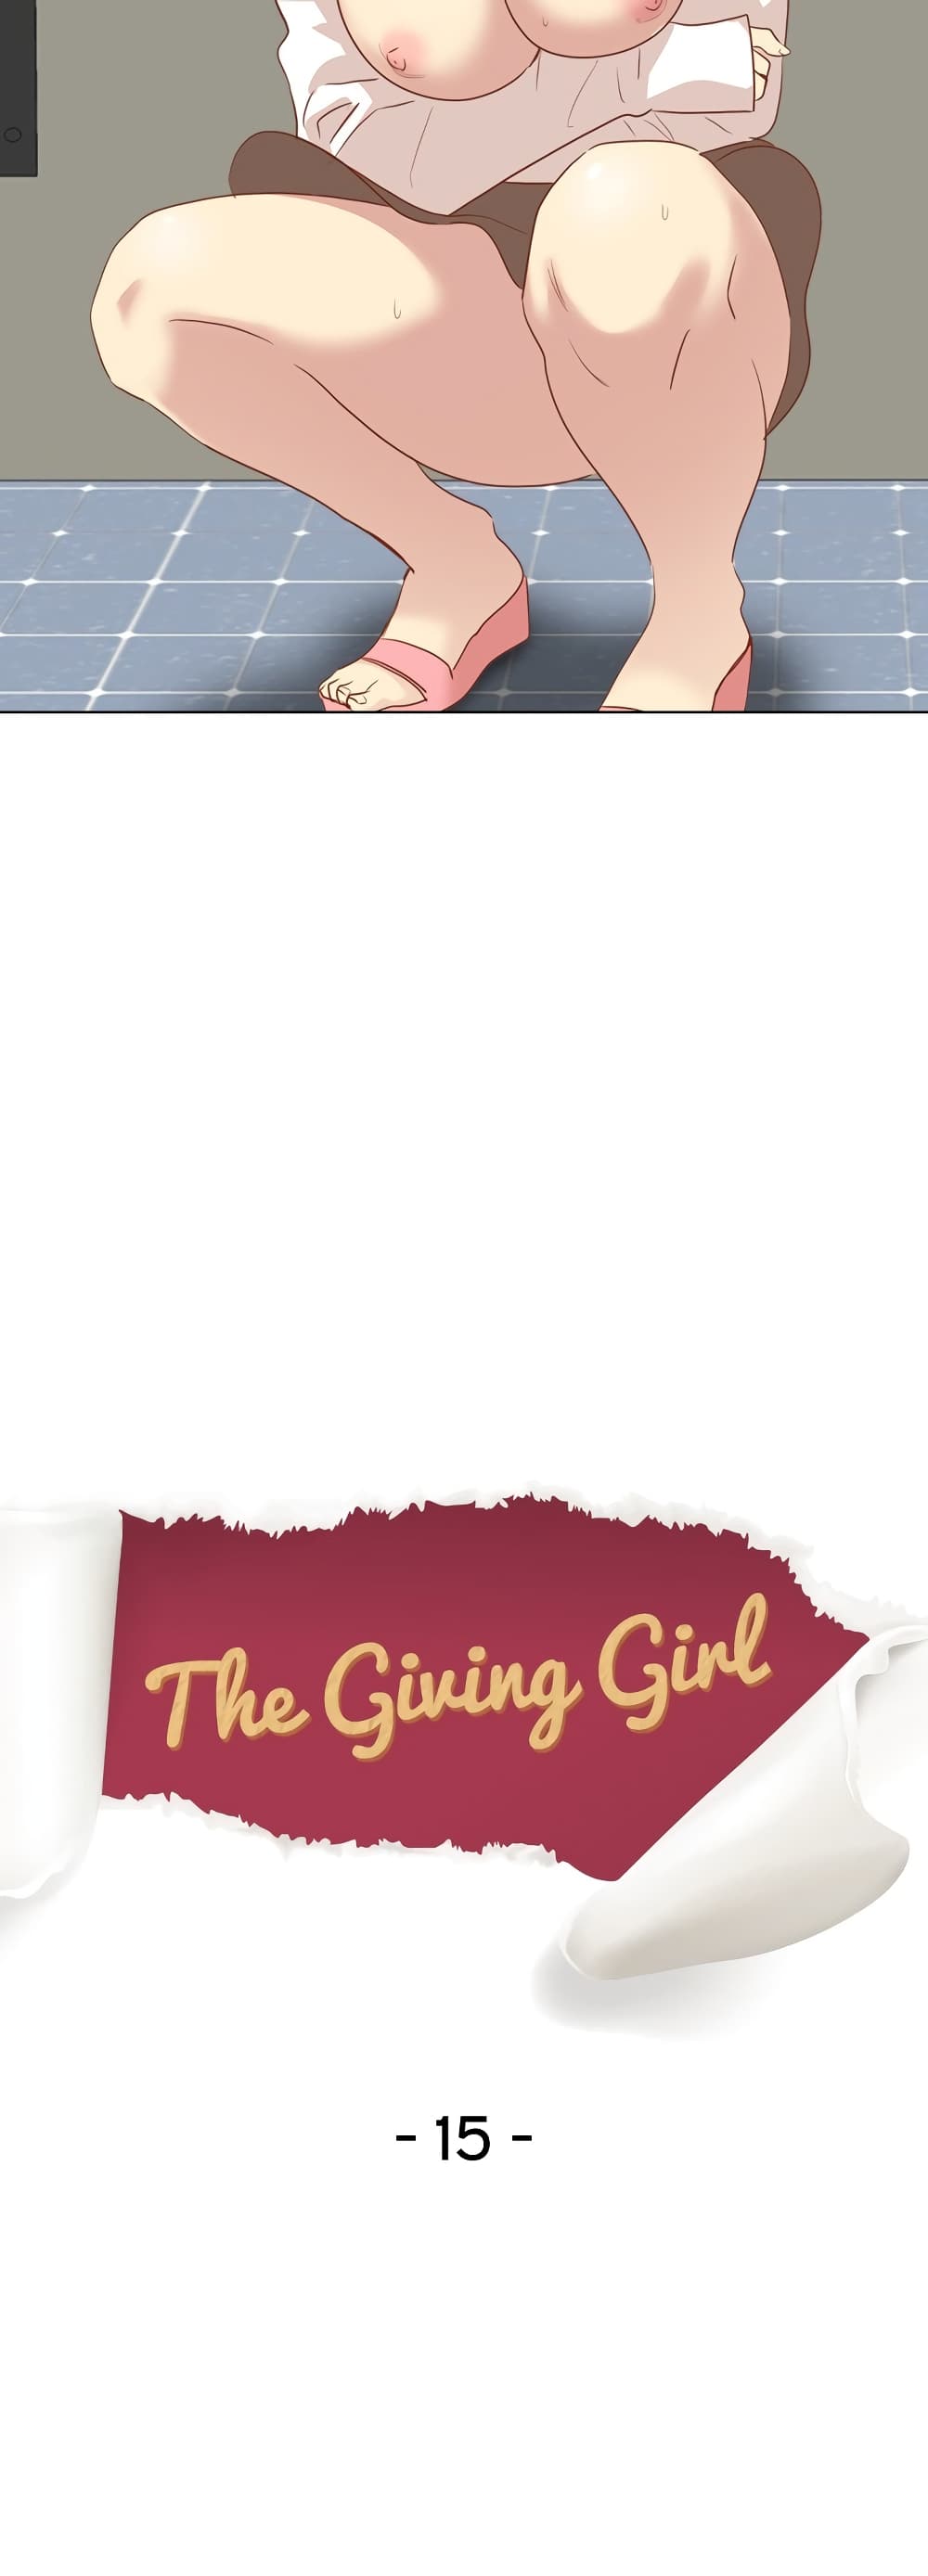 Giving Girl 15-15